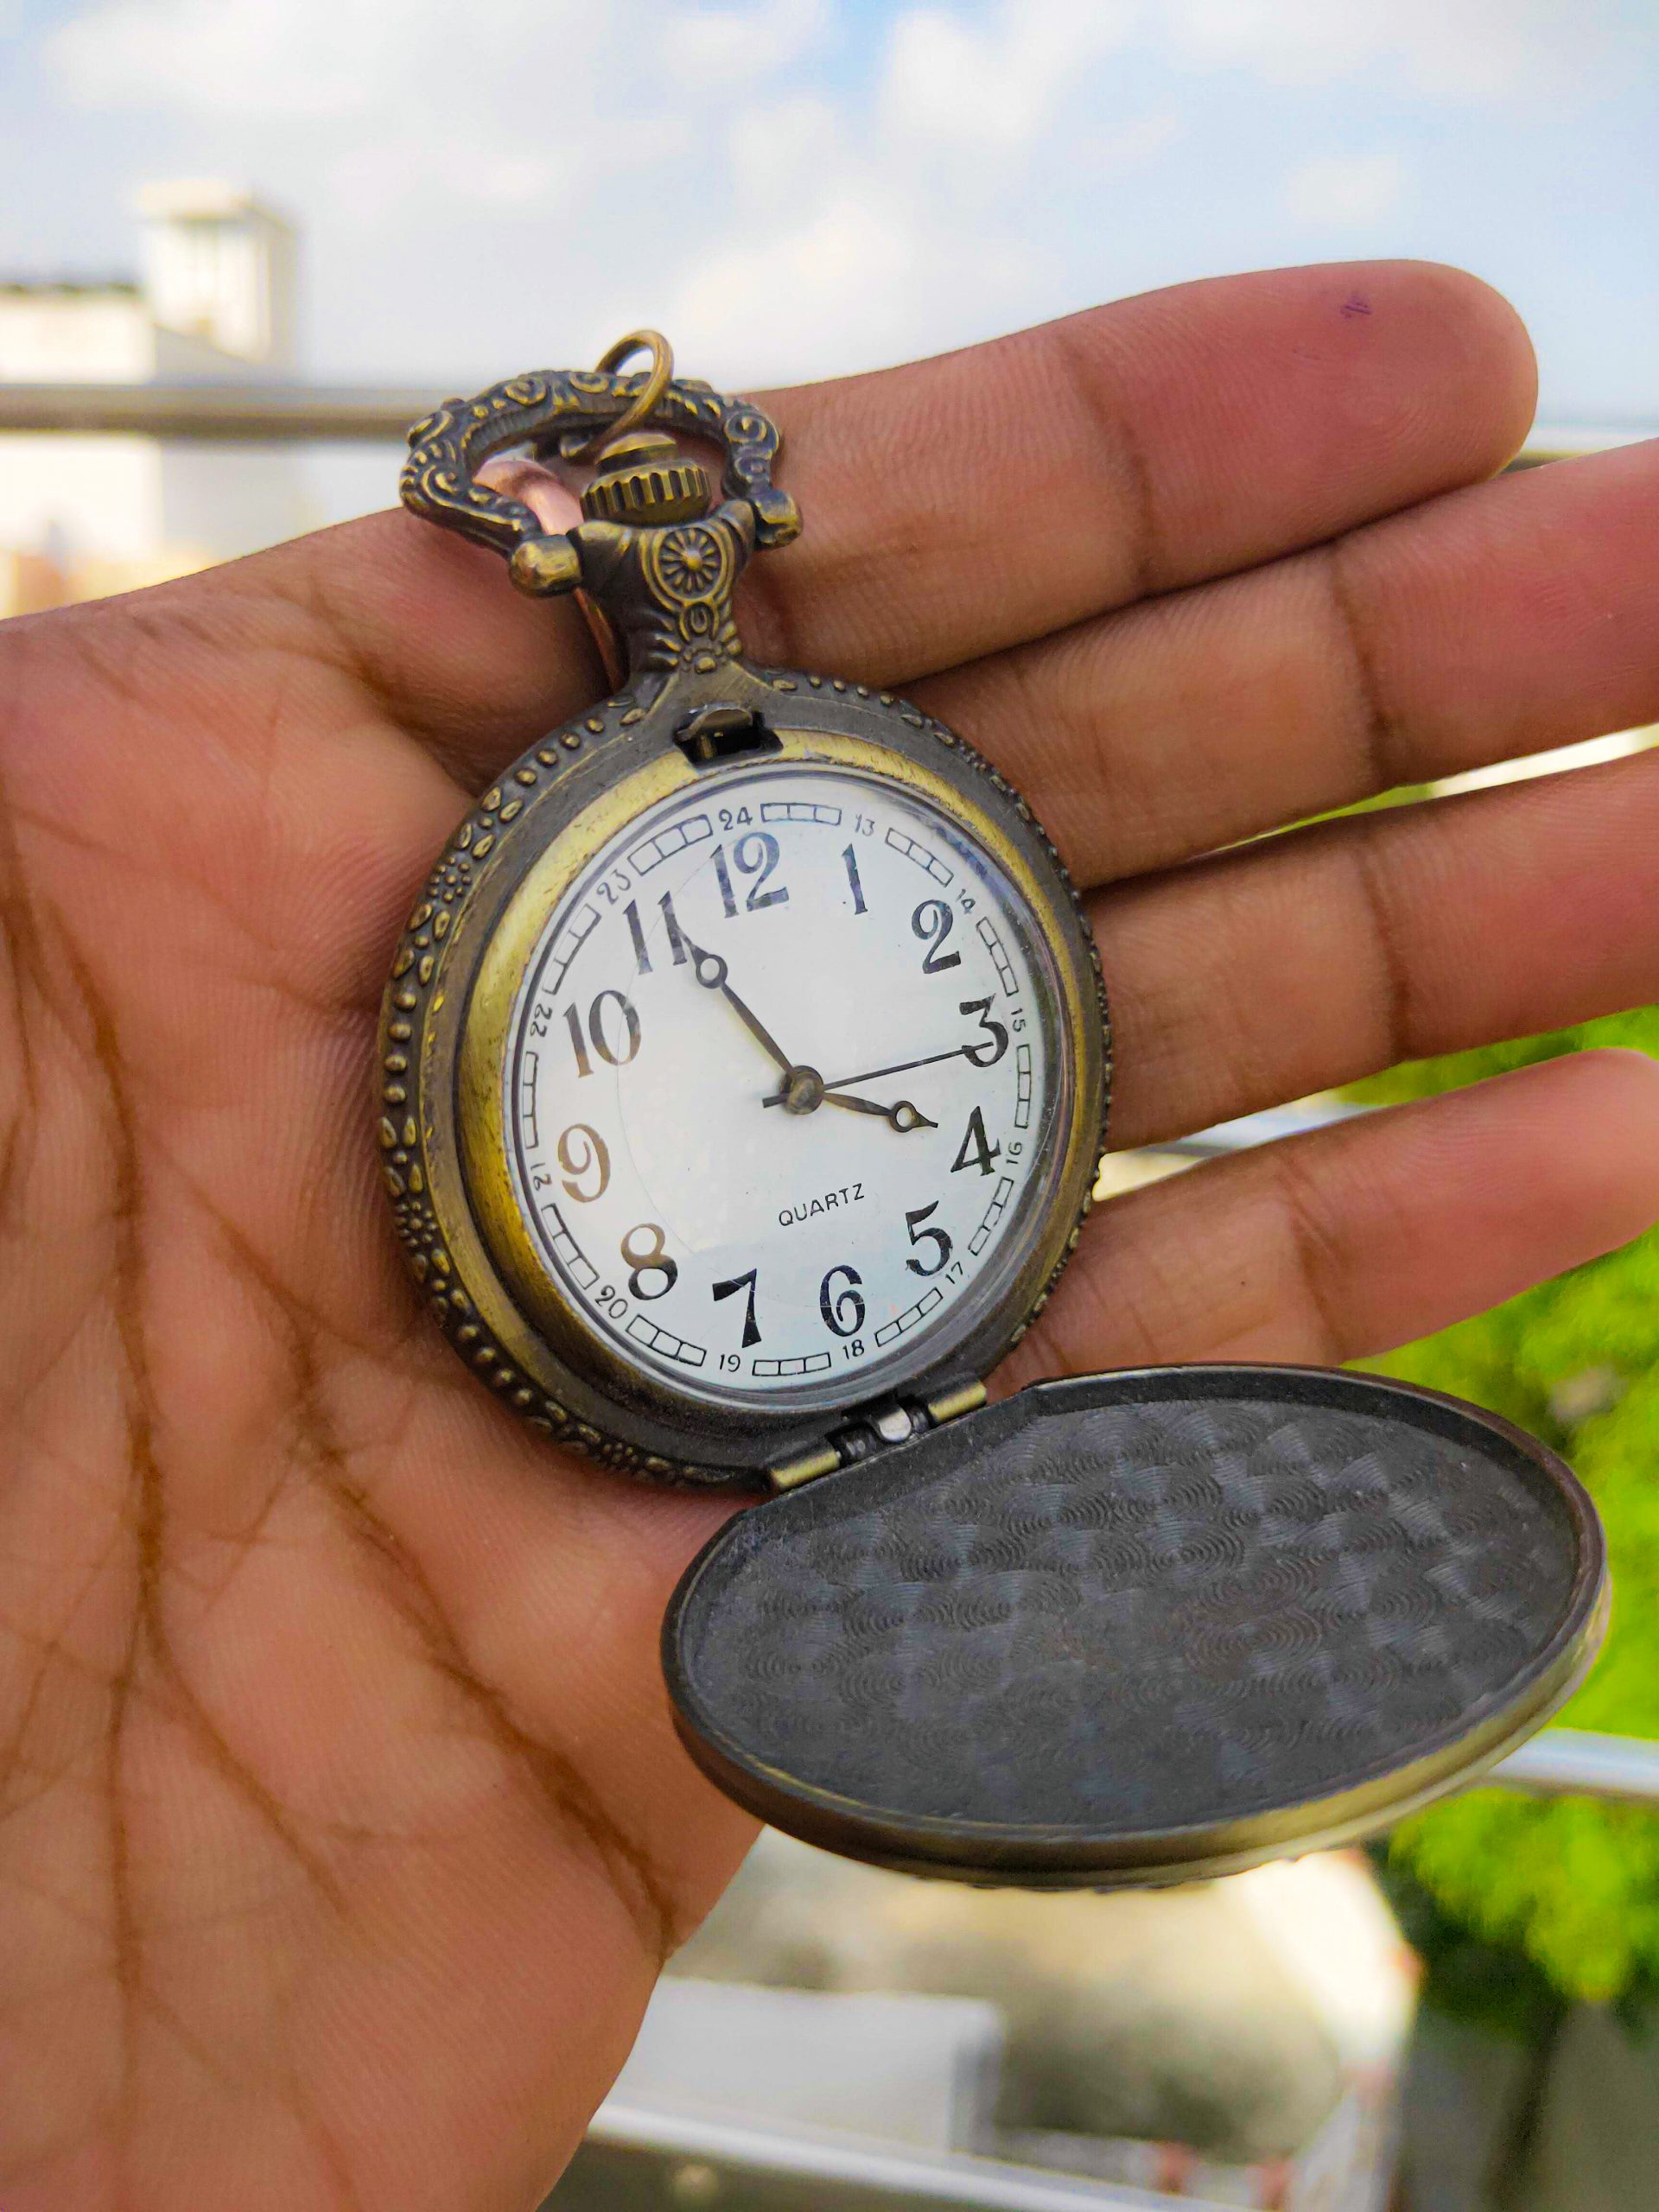 An antique pocket watch